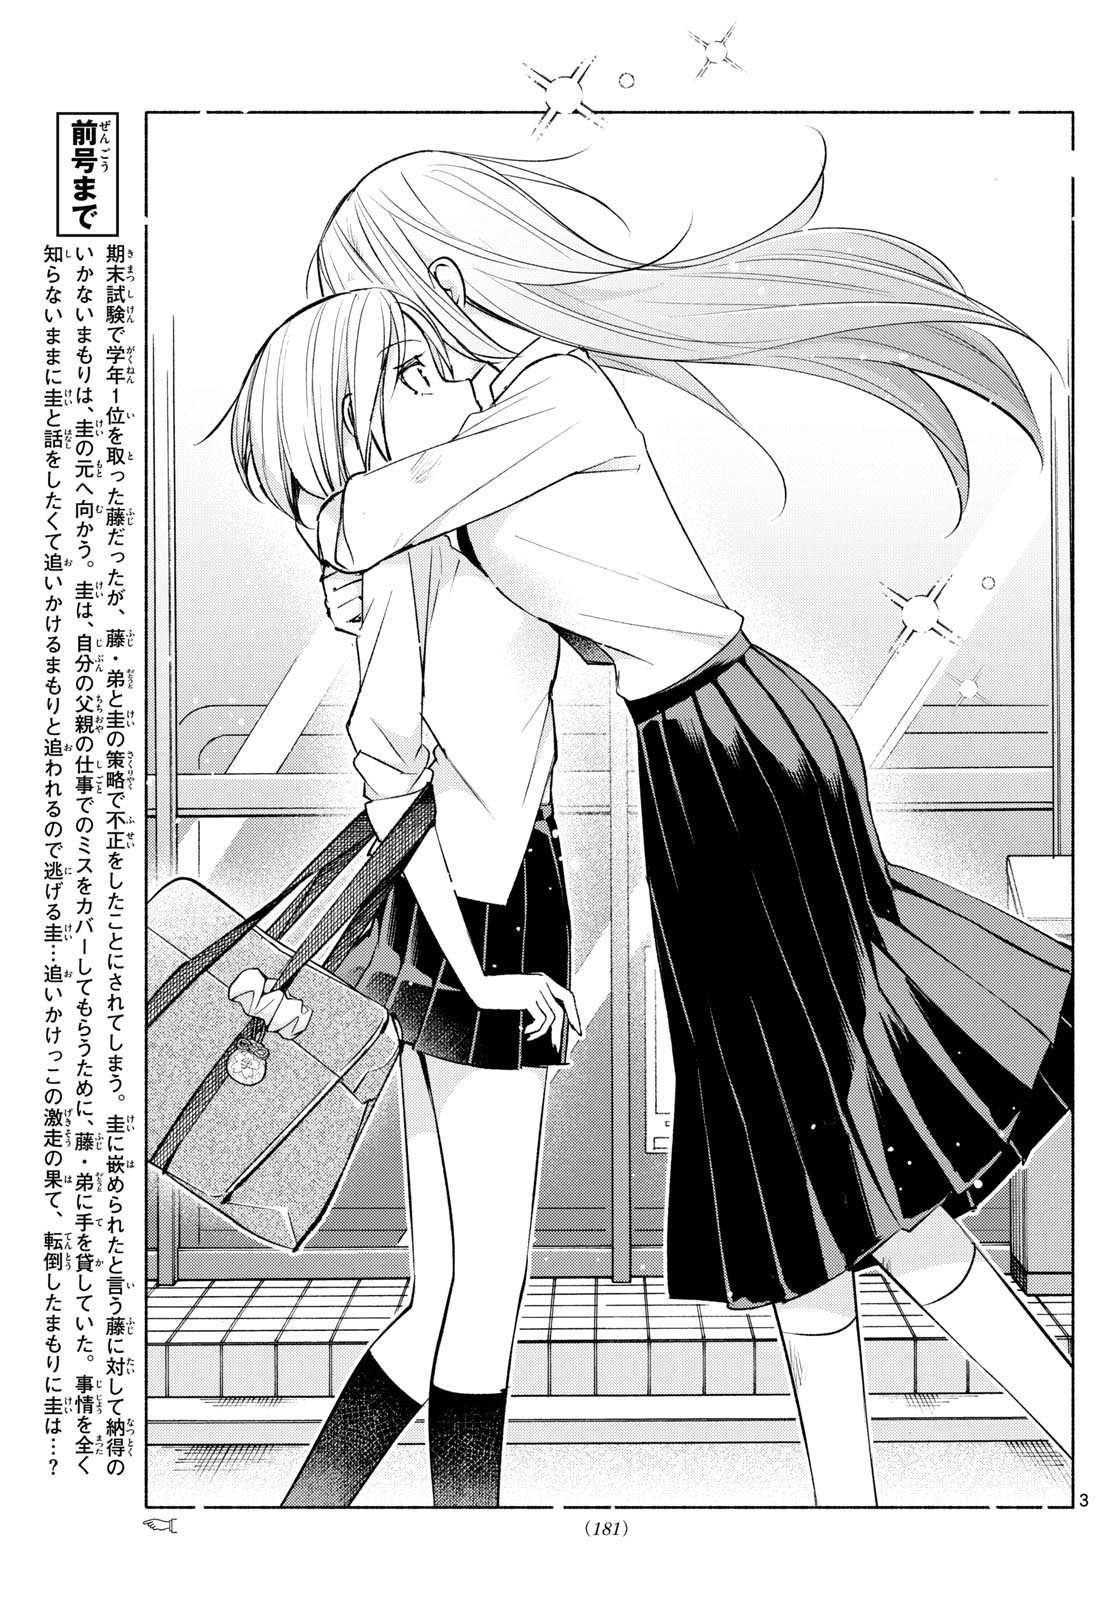 Kimi to Warui Koto ga Shitai - Chapter 041 - Page 3